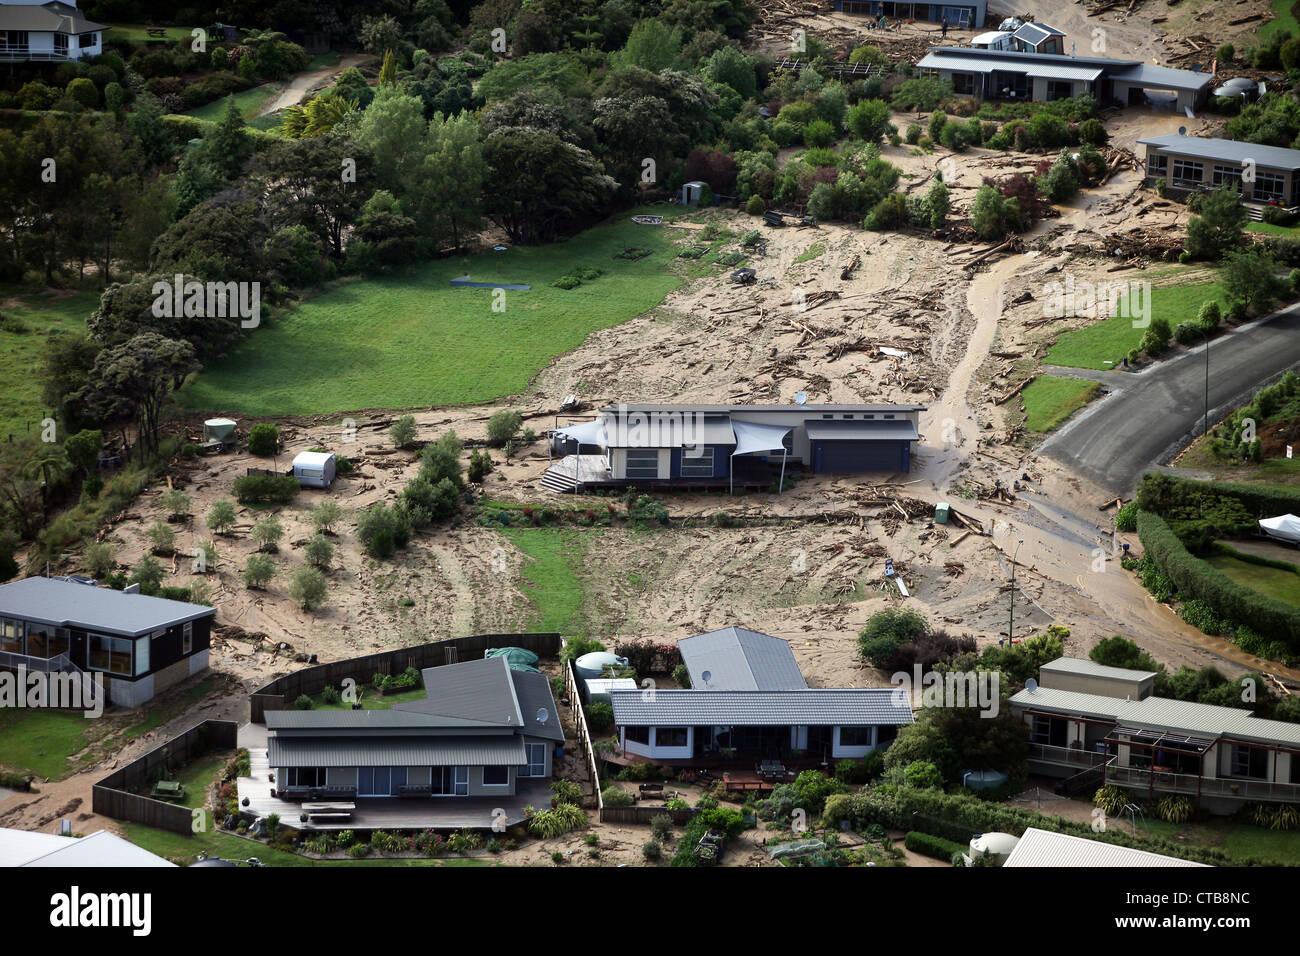 Fotografia aerea di case devastate record seguente la rottura delle precipitazioni nella regione di Nelson della Nuova Zelanda a dicembre 2011 Foto Stock